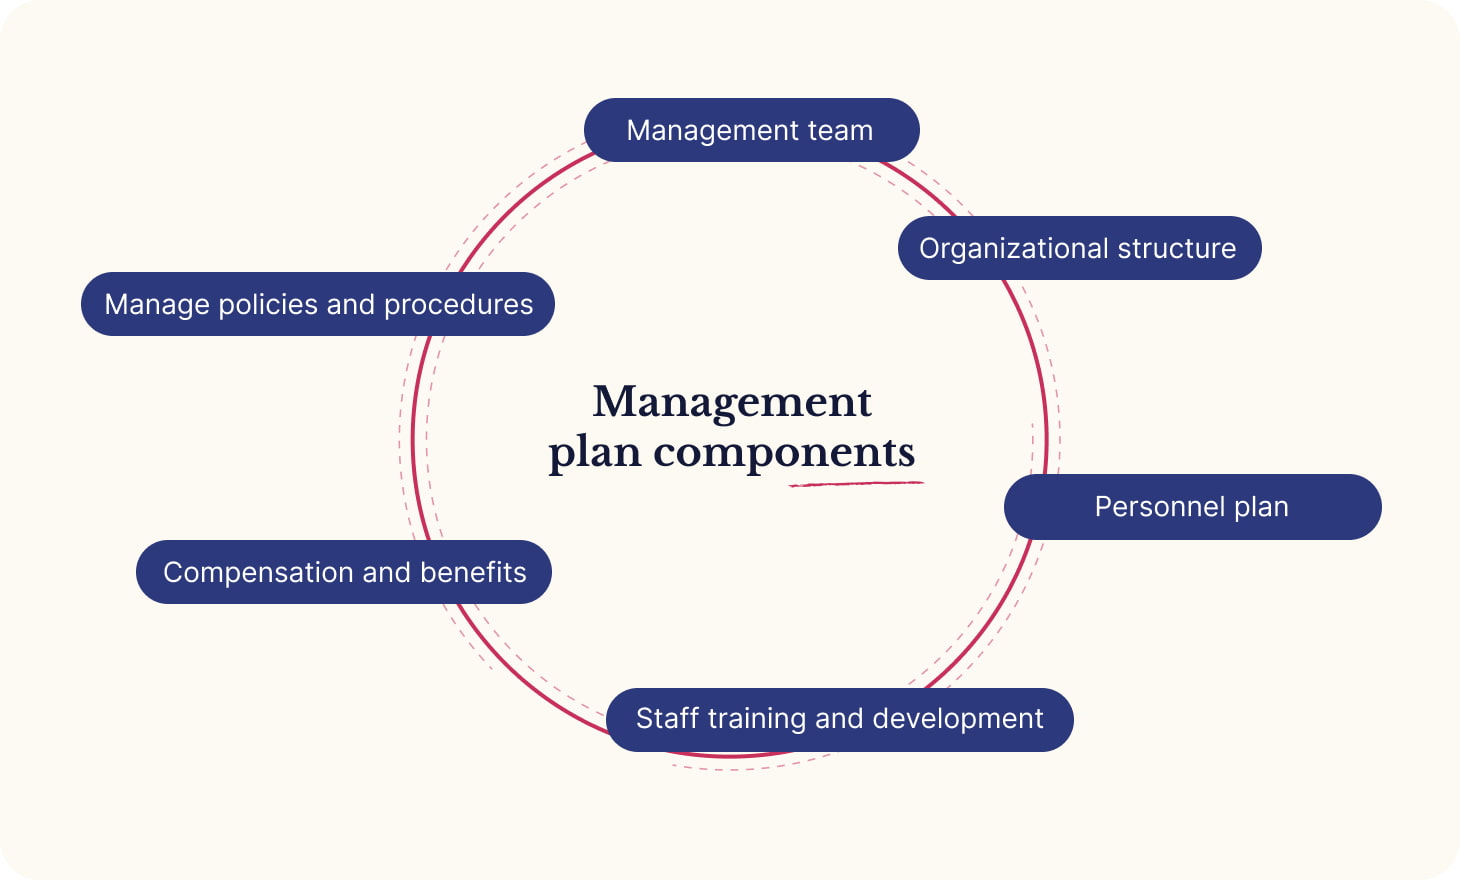 Management plan components